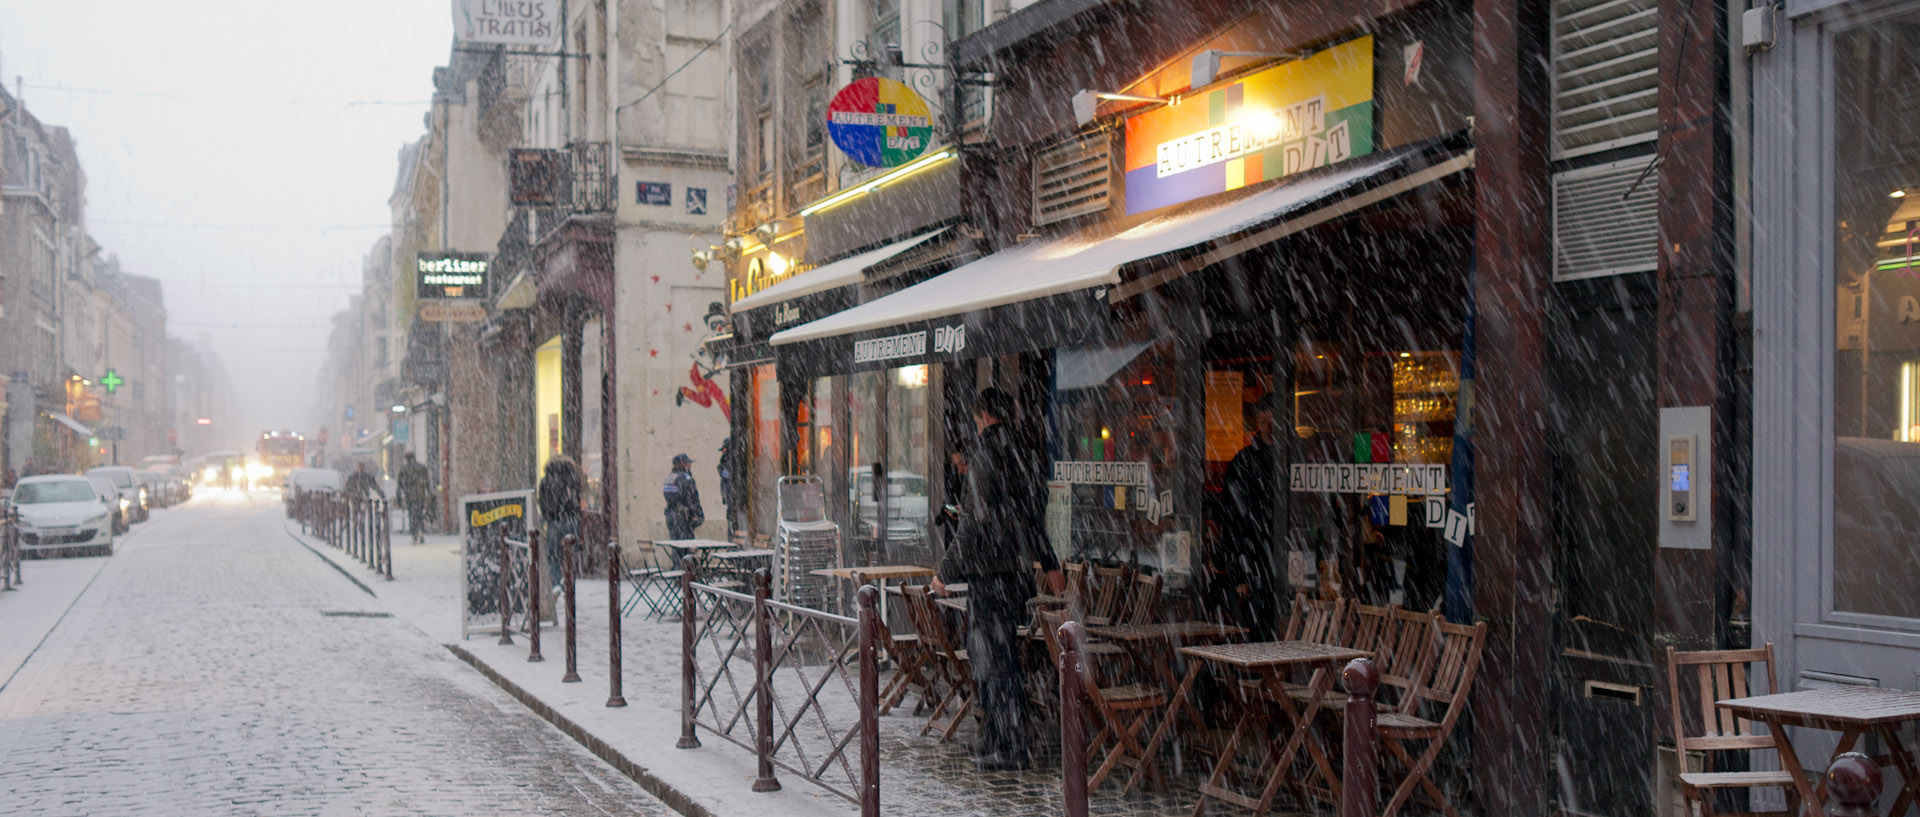 Averse de neige, rue Royale, à Lille.